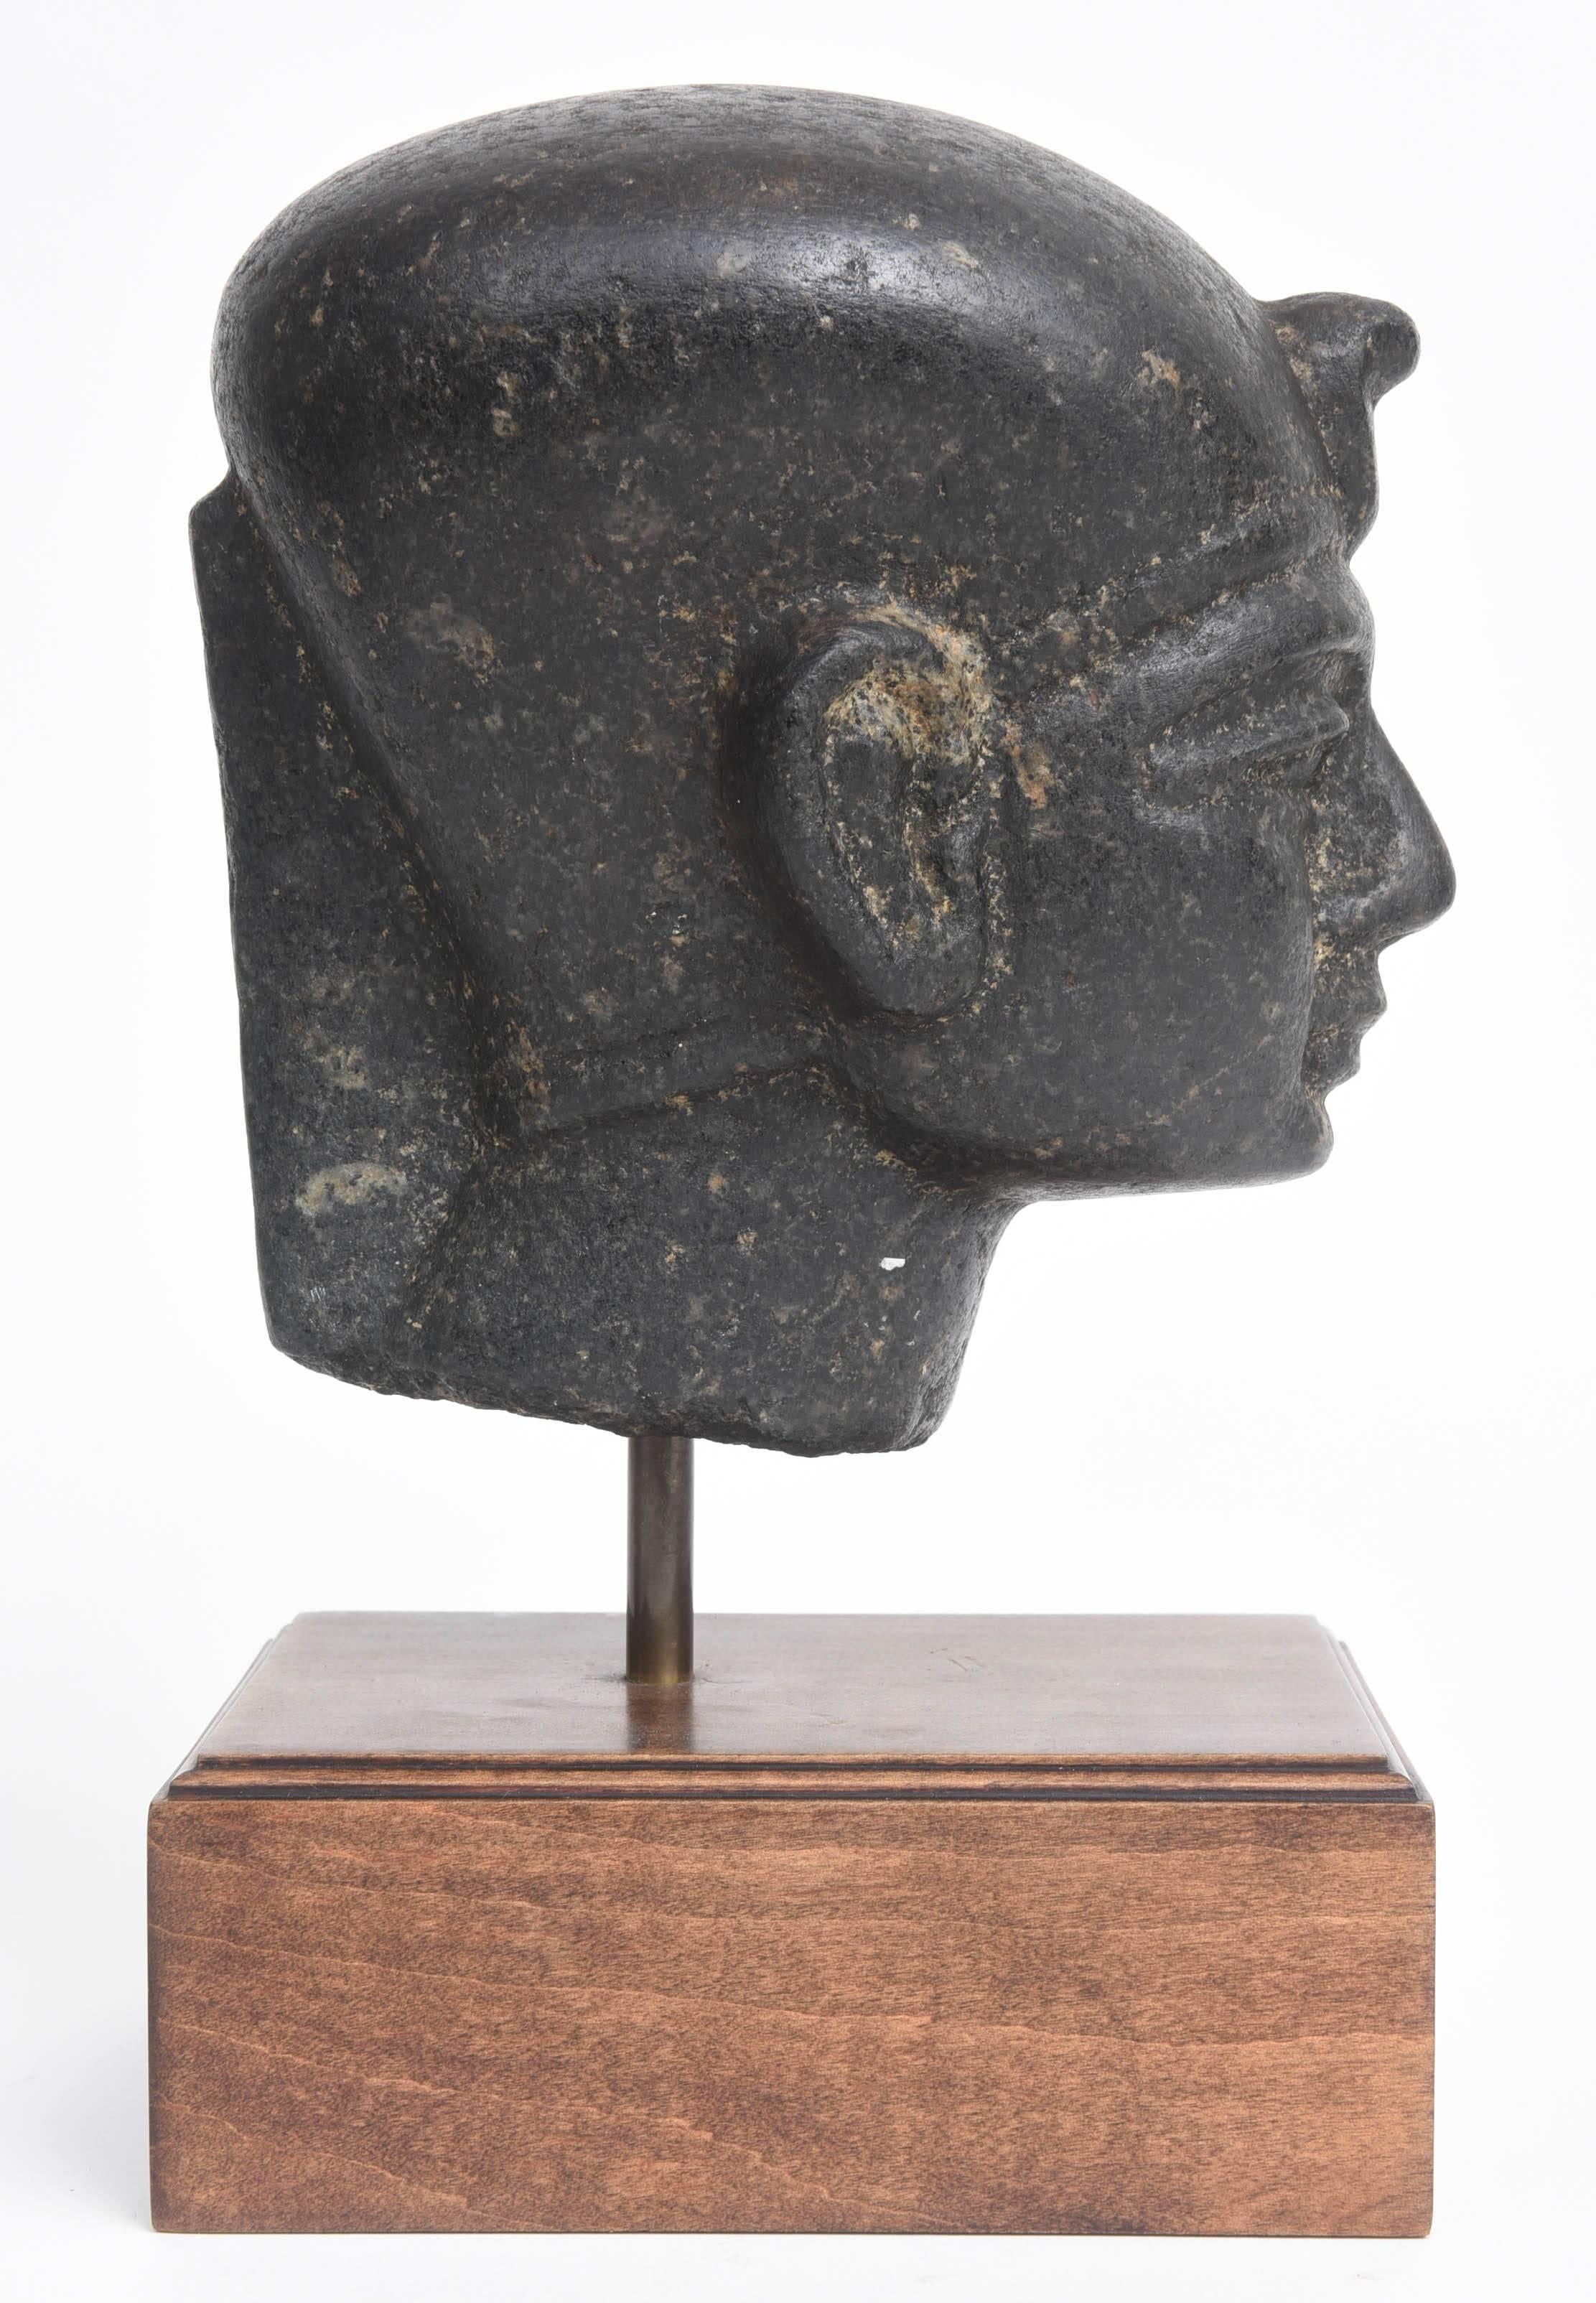 Carved Basalt Head of Egyptian Pharaoh Tuthmosis, 18th Dynasty